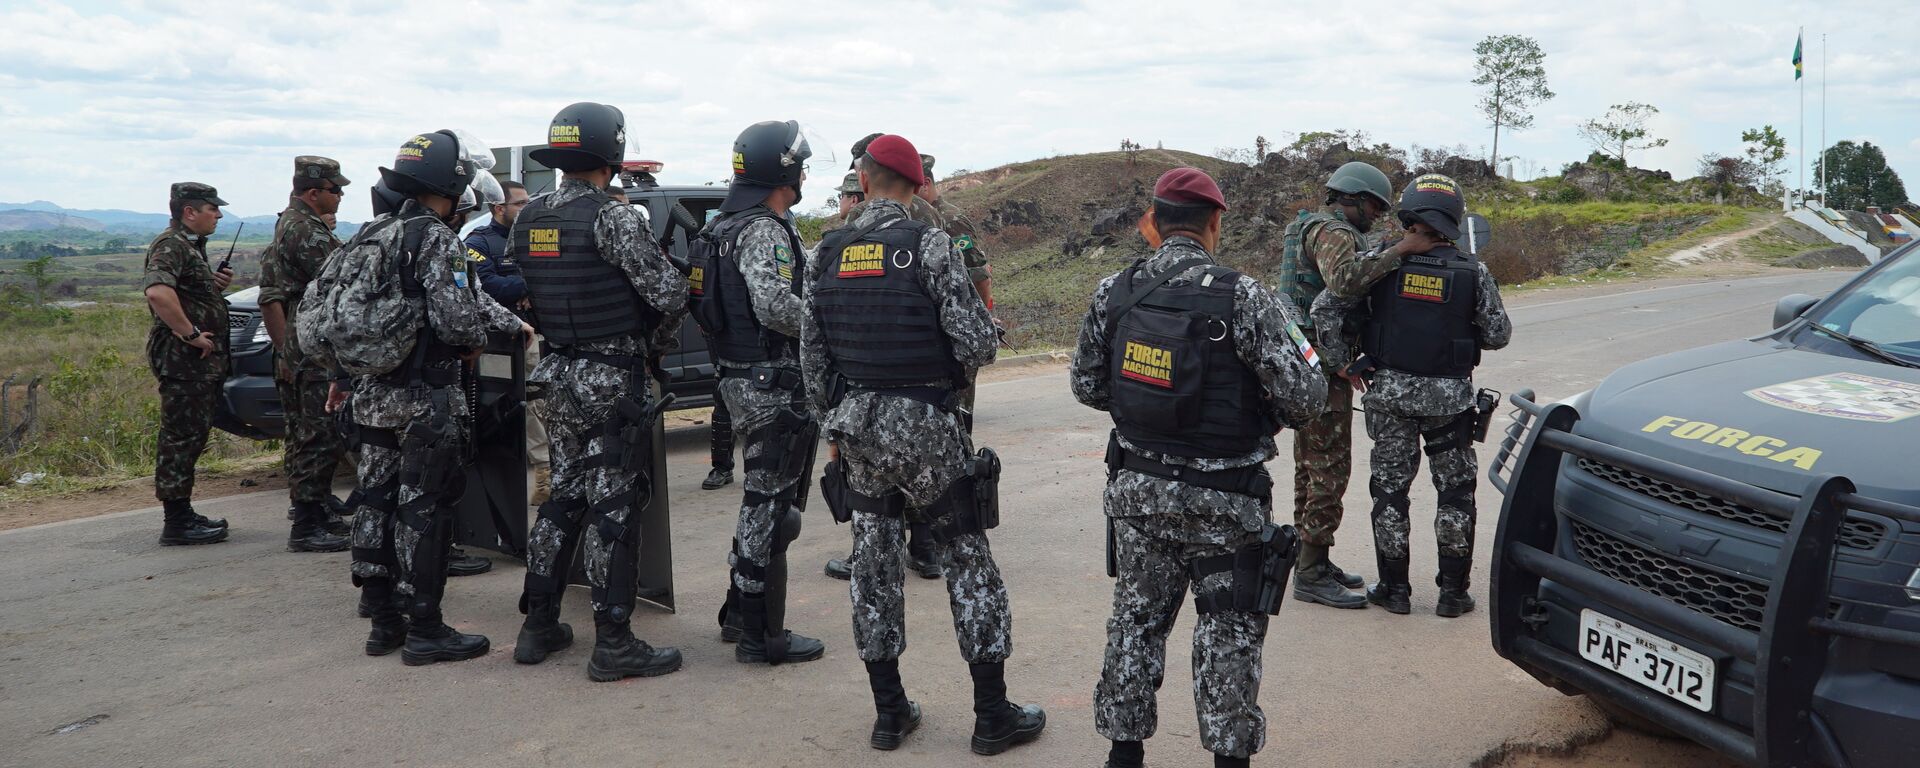 Agentes da Força Nacional estabelecem zona de segurança após tumulto na fronteira entre Brasil e Venezuela - Sputnik Brasil, 1920, 10.06.2022